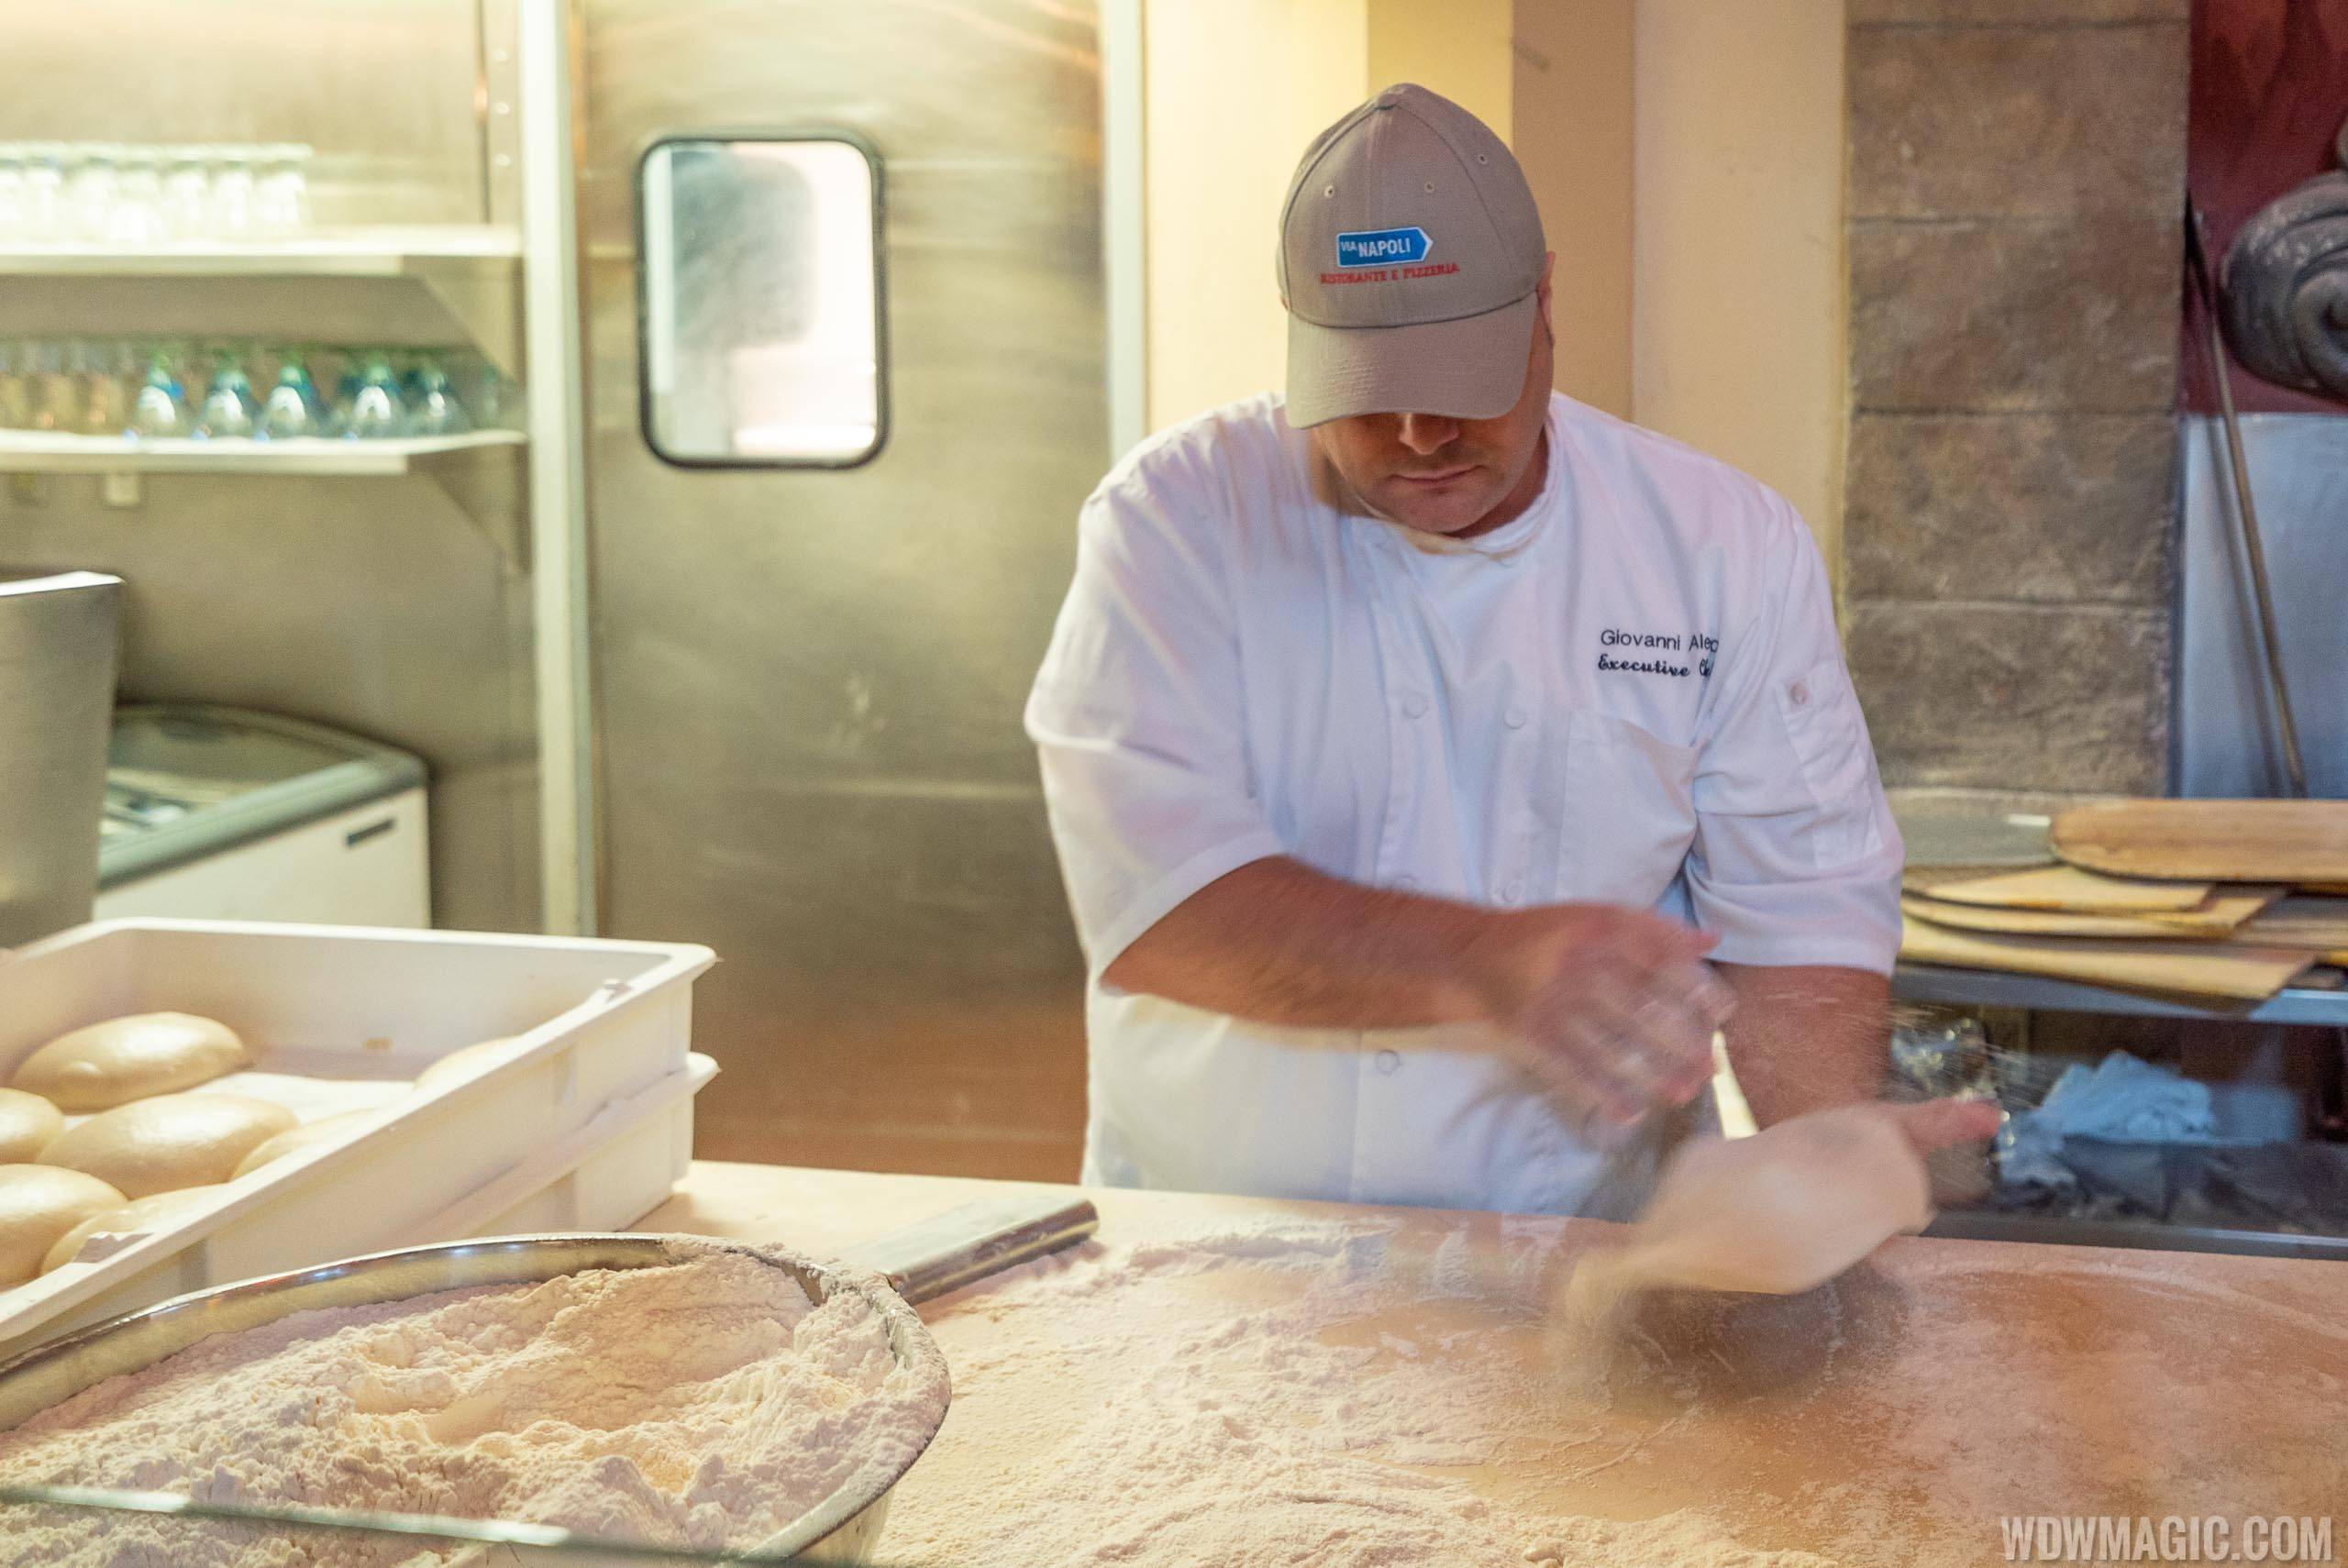 Via Napoli Executive Chef Giovanni Aletto prepares the pizza dough